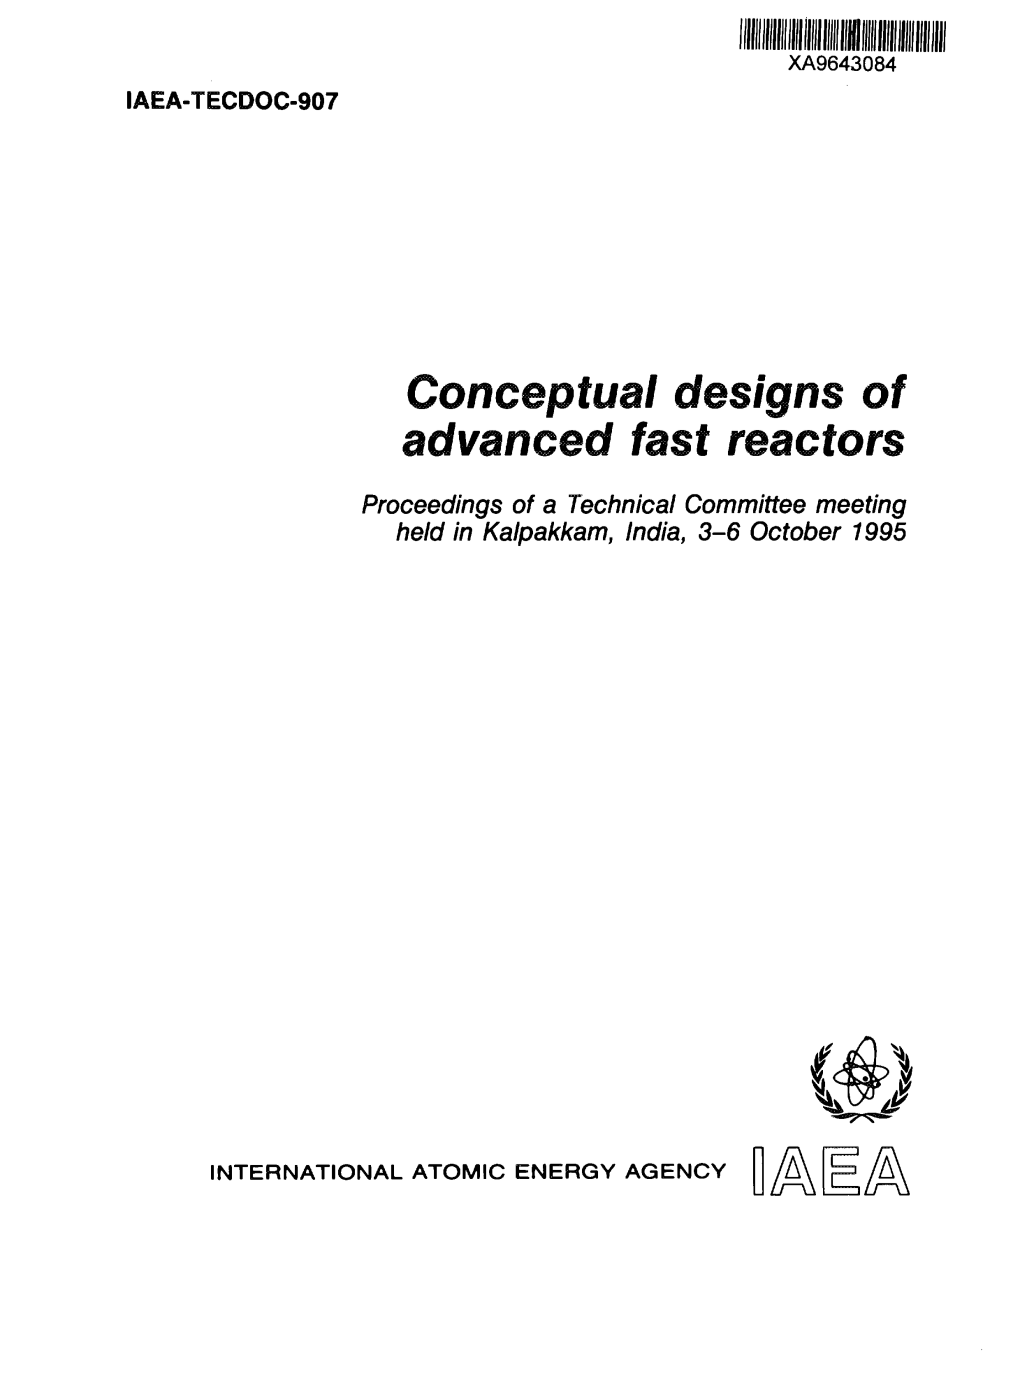 Conceptual Designs of Advanced Fast Reactors